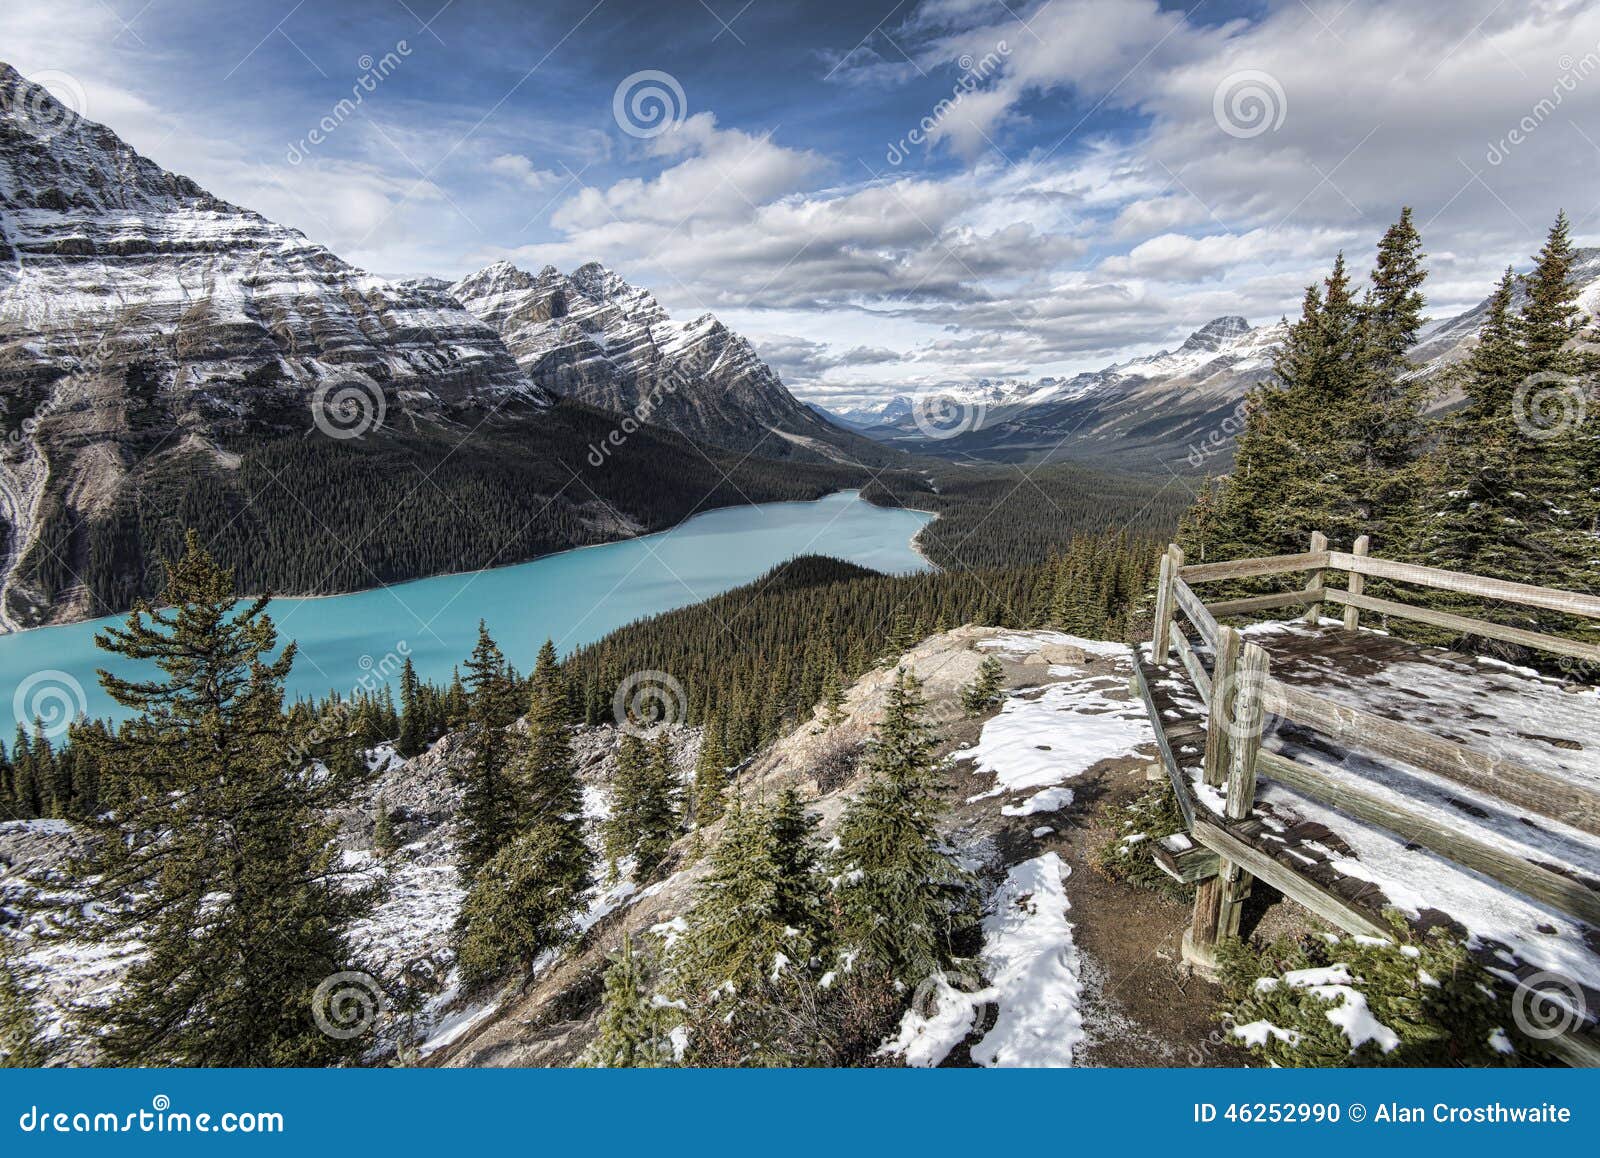 Peyto See stockfoto. Bild von seen, berge, reise, winterlich - 46252990